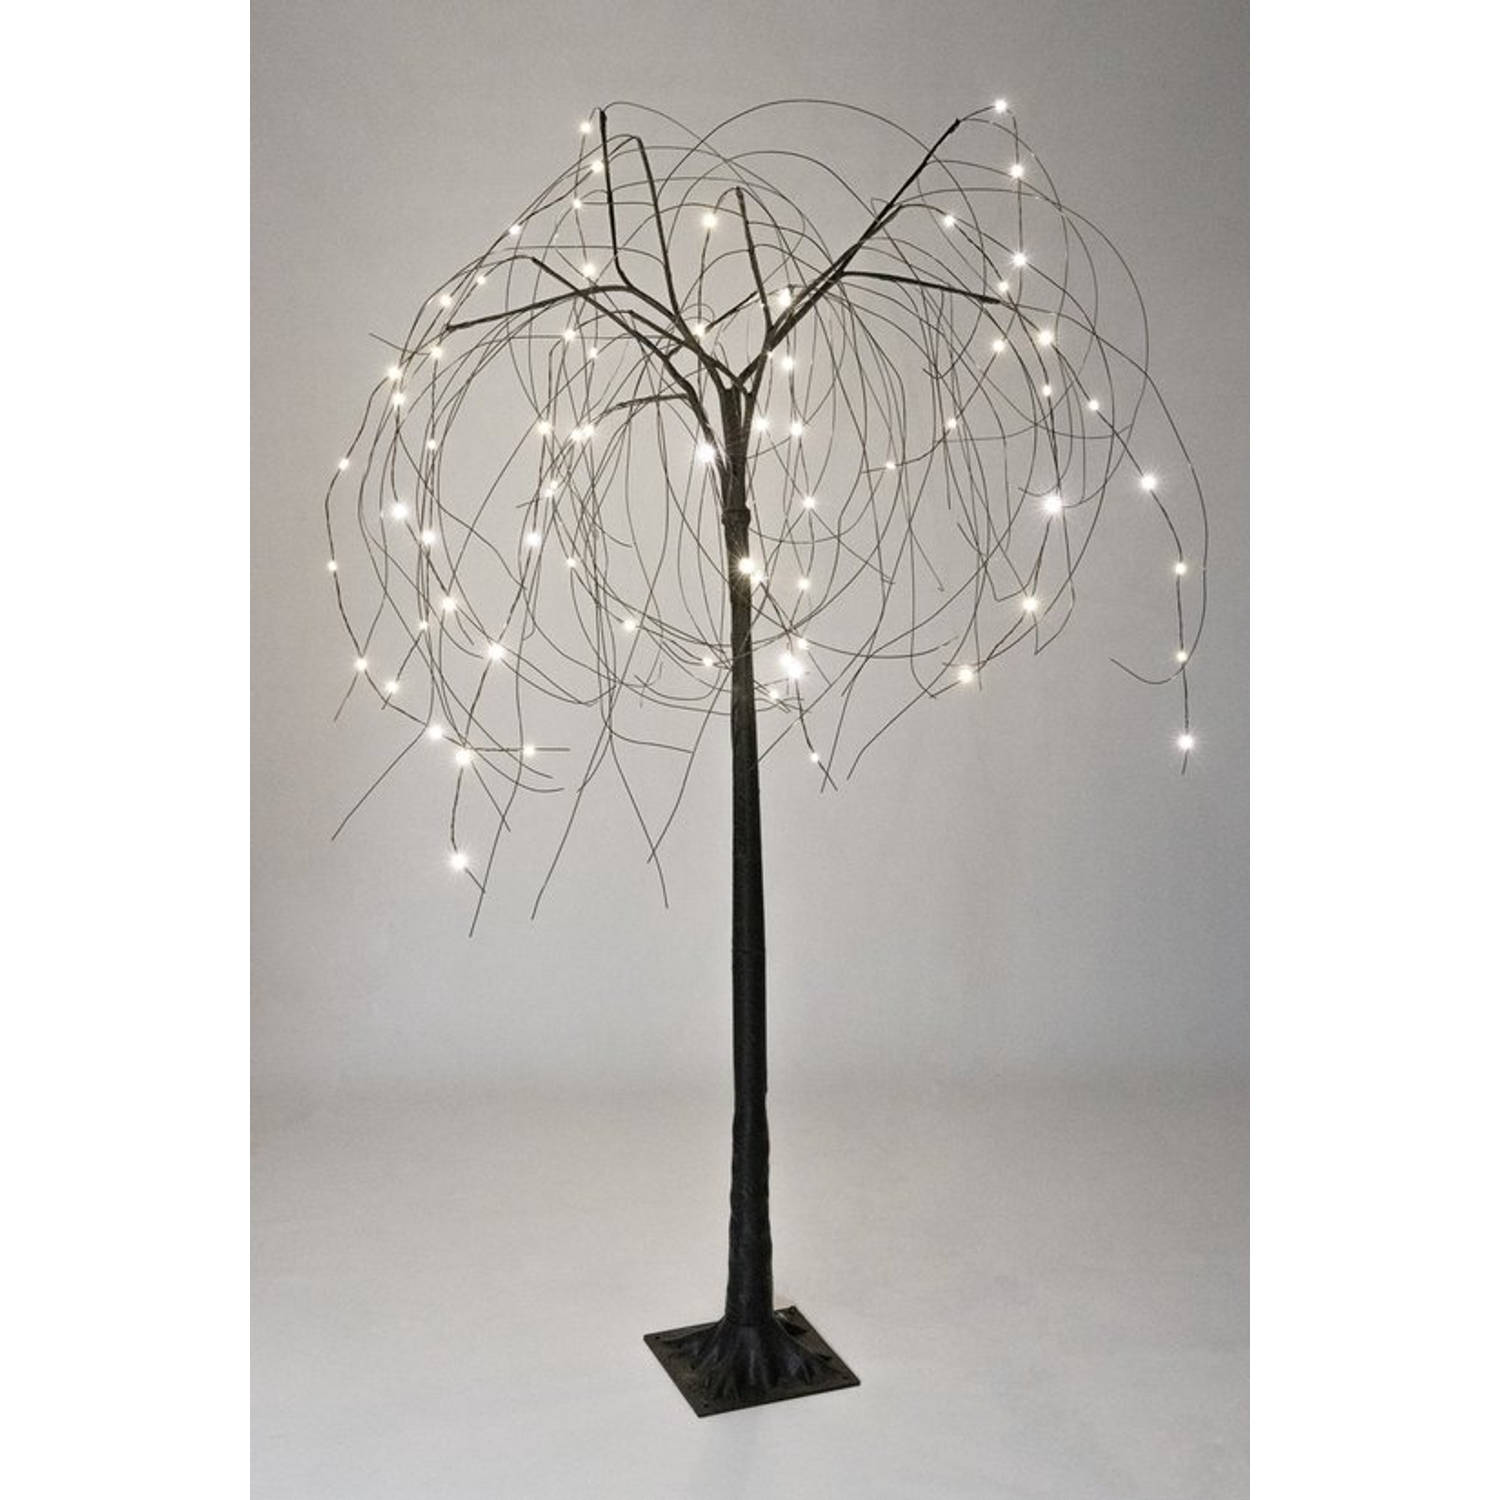 MaxxHome Decoratieve Kerstboom - Lichttak - Wilgenboom - 80cm - 72 LED - Warm wit licht